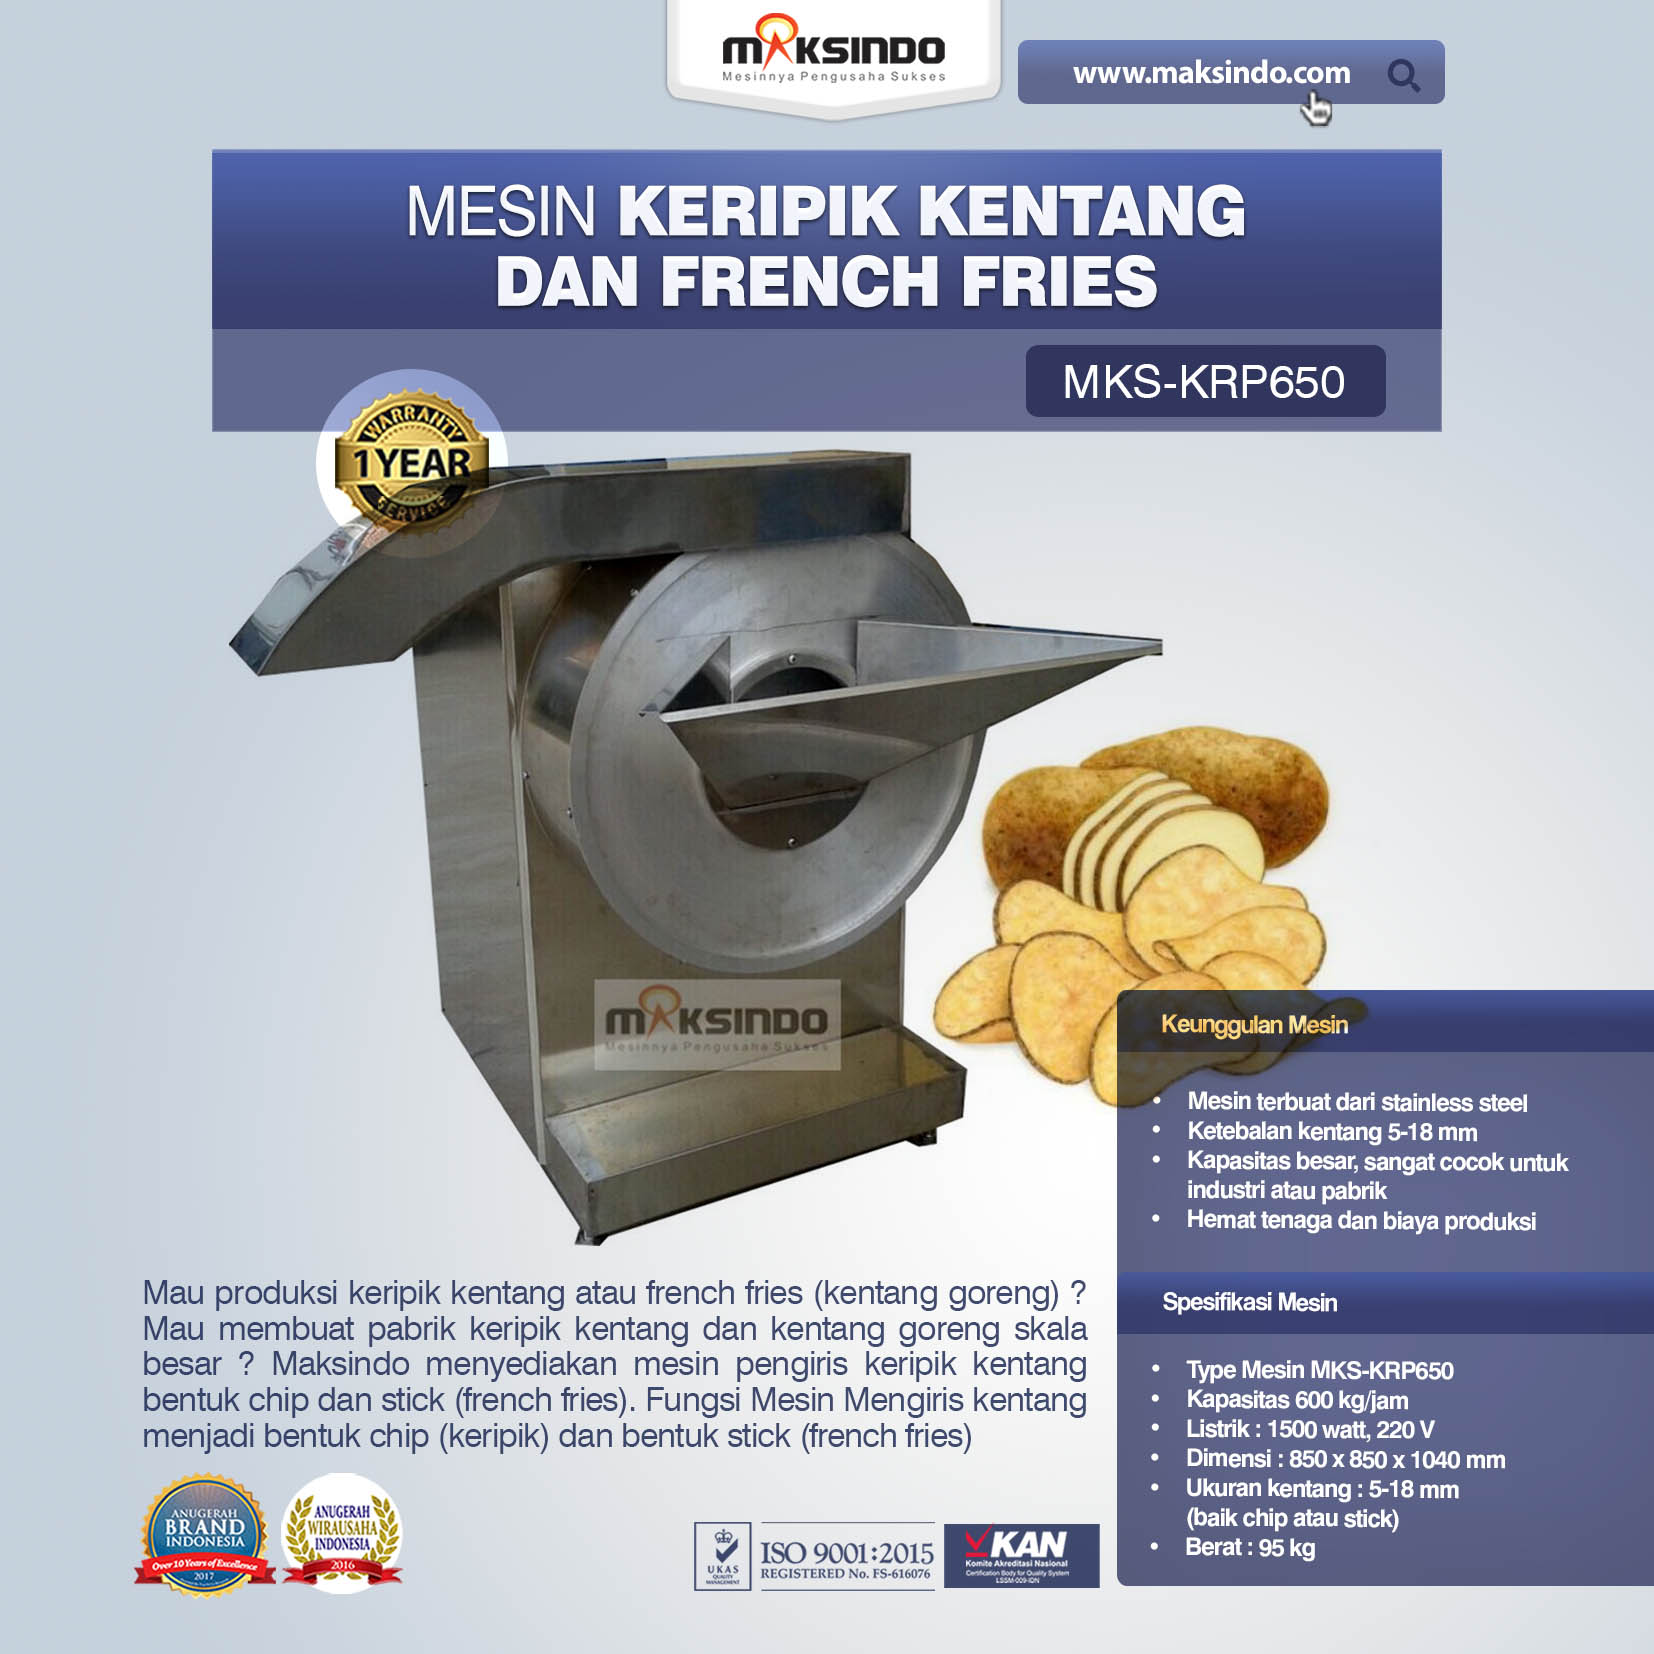 Jual Mesin Keripik Kentang dan French Fries KRP650 di Banjarmasin